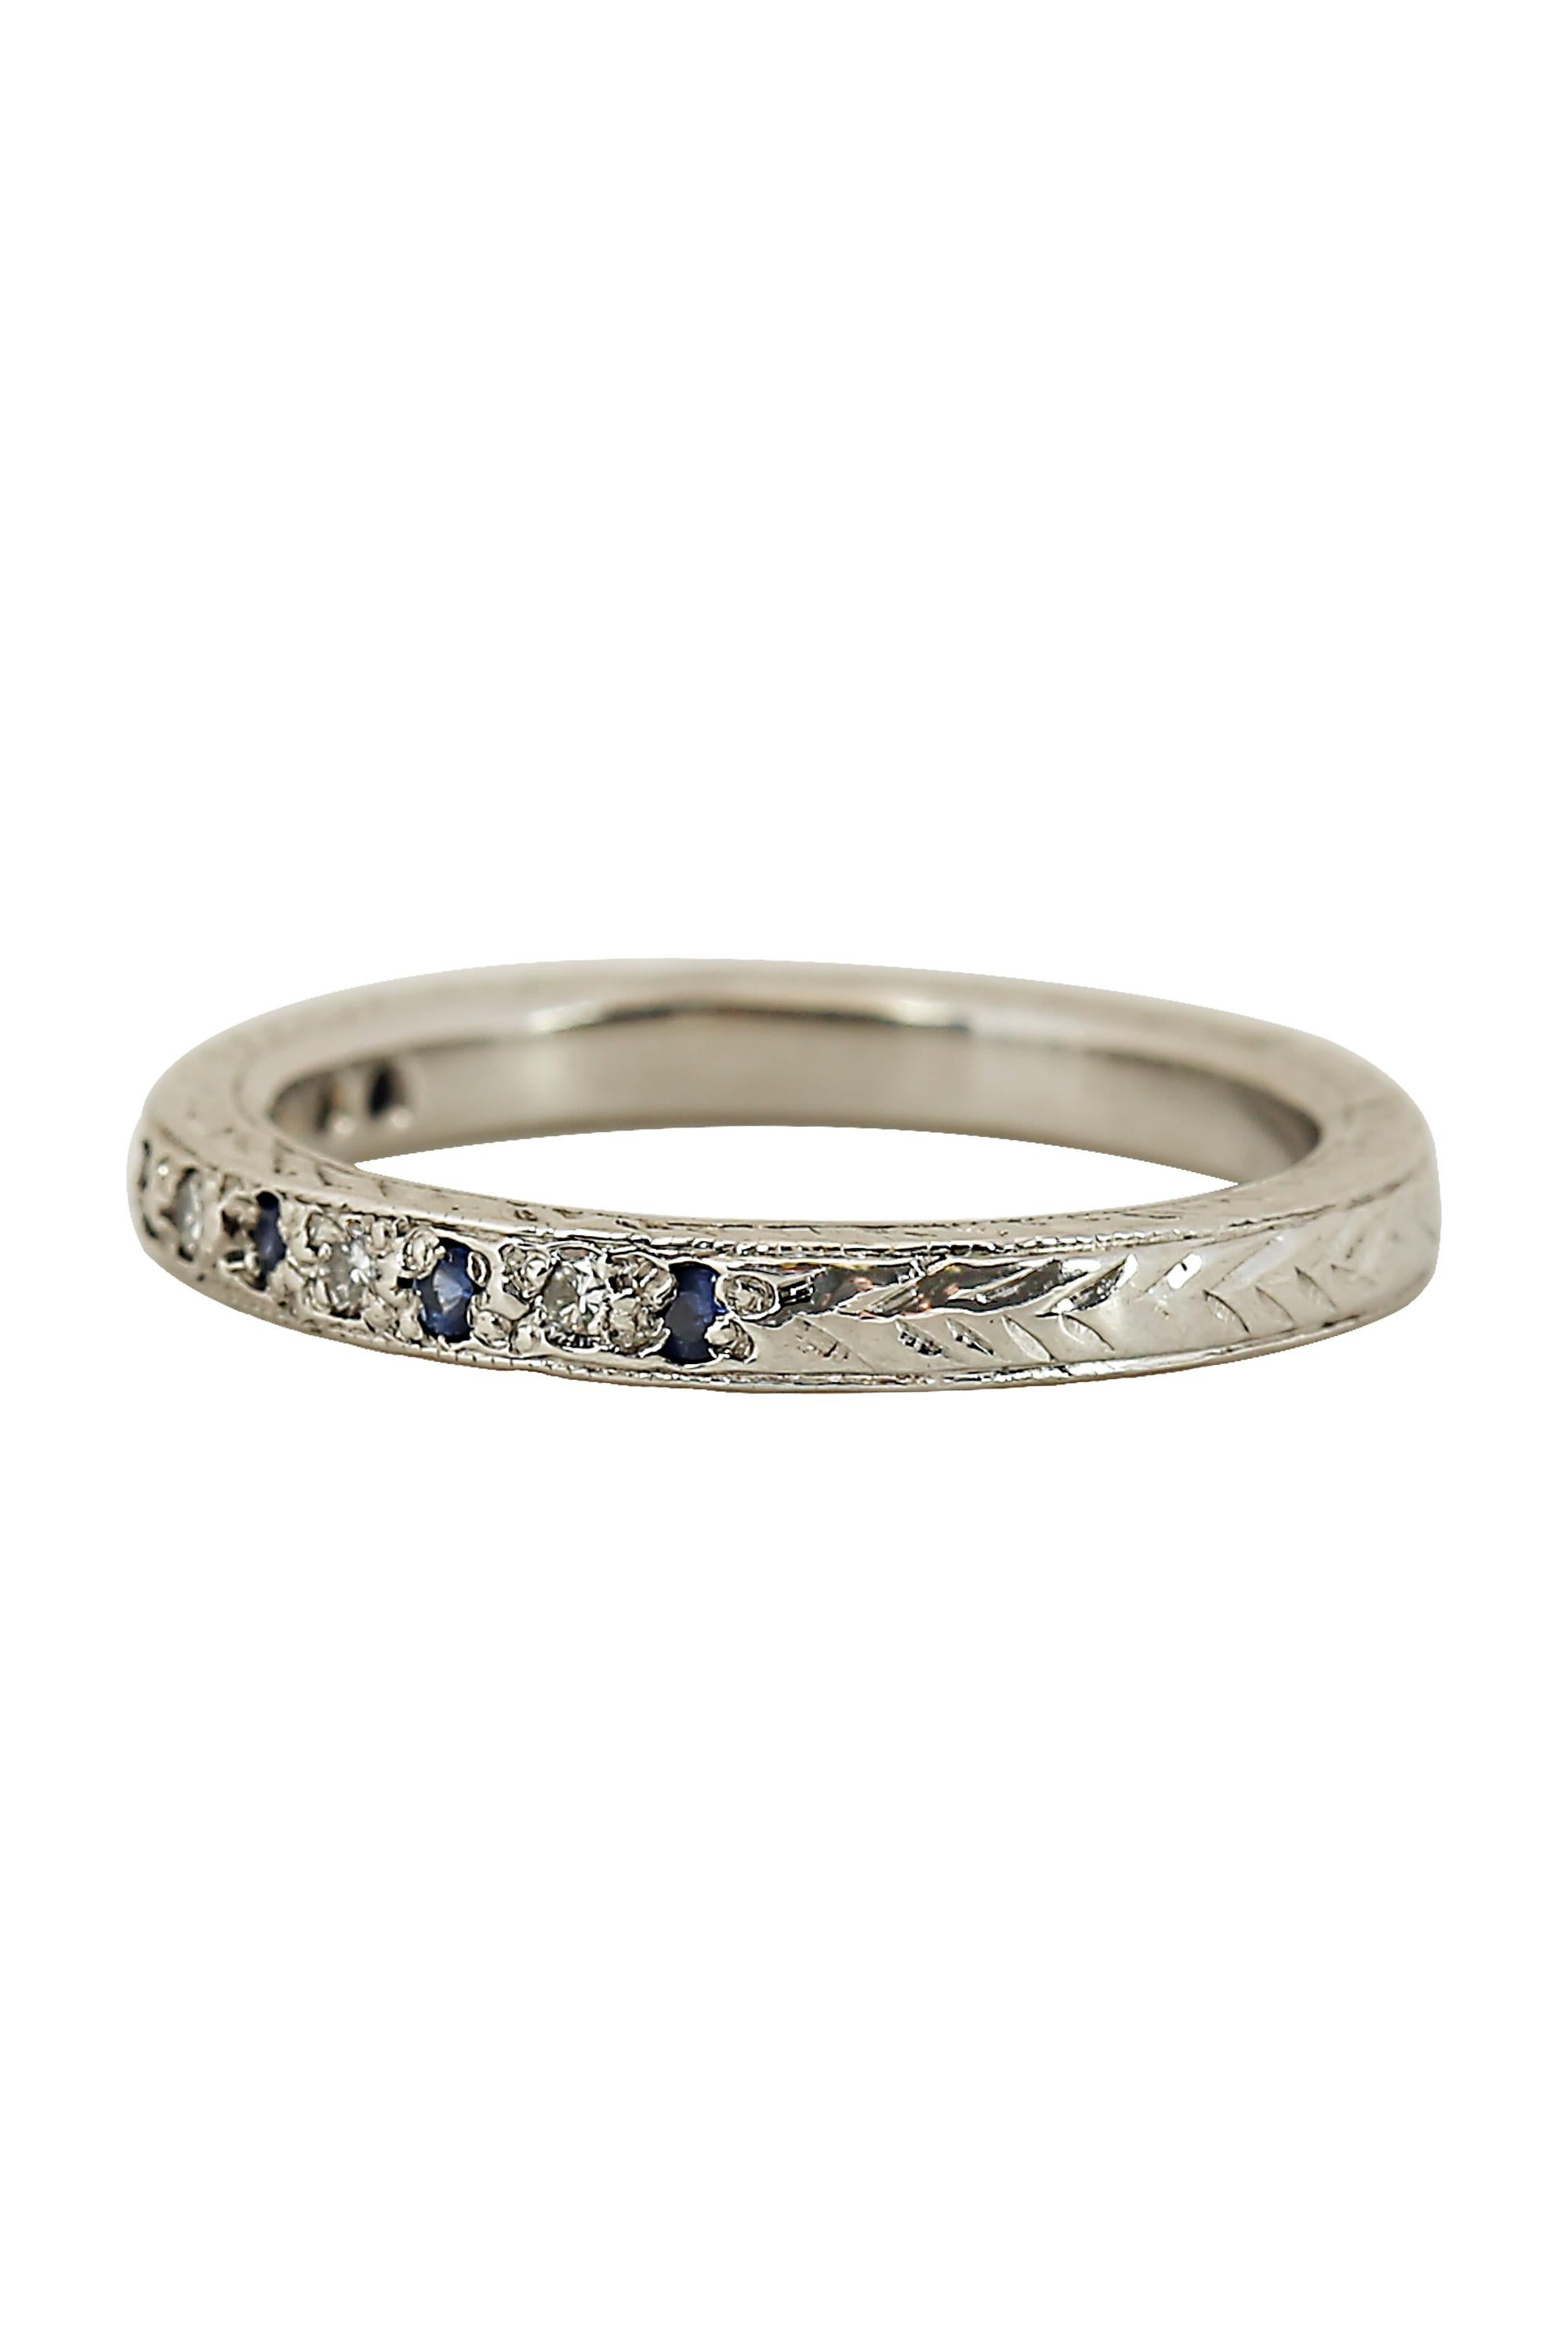 Ein hübsches Vintage-Band mit abwechselnd runden Saphiren und Diamanten in einem zart gravierten Band. Das Gesamtgewicht der Edelsteine beträgt 0,12 Karat. Derzeit Größe 5,5.

